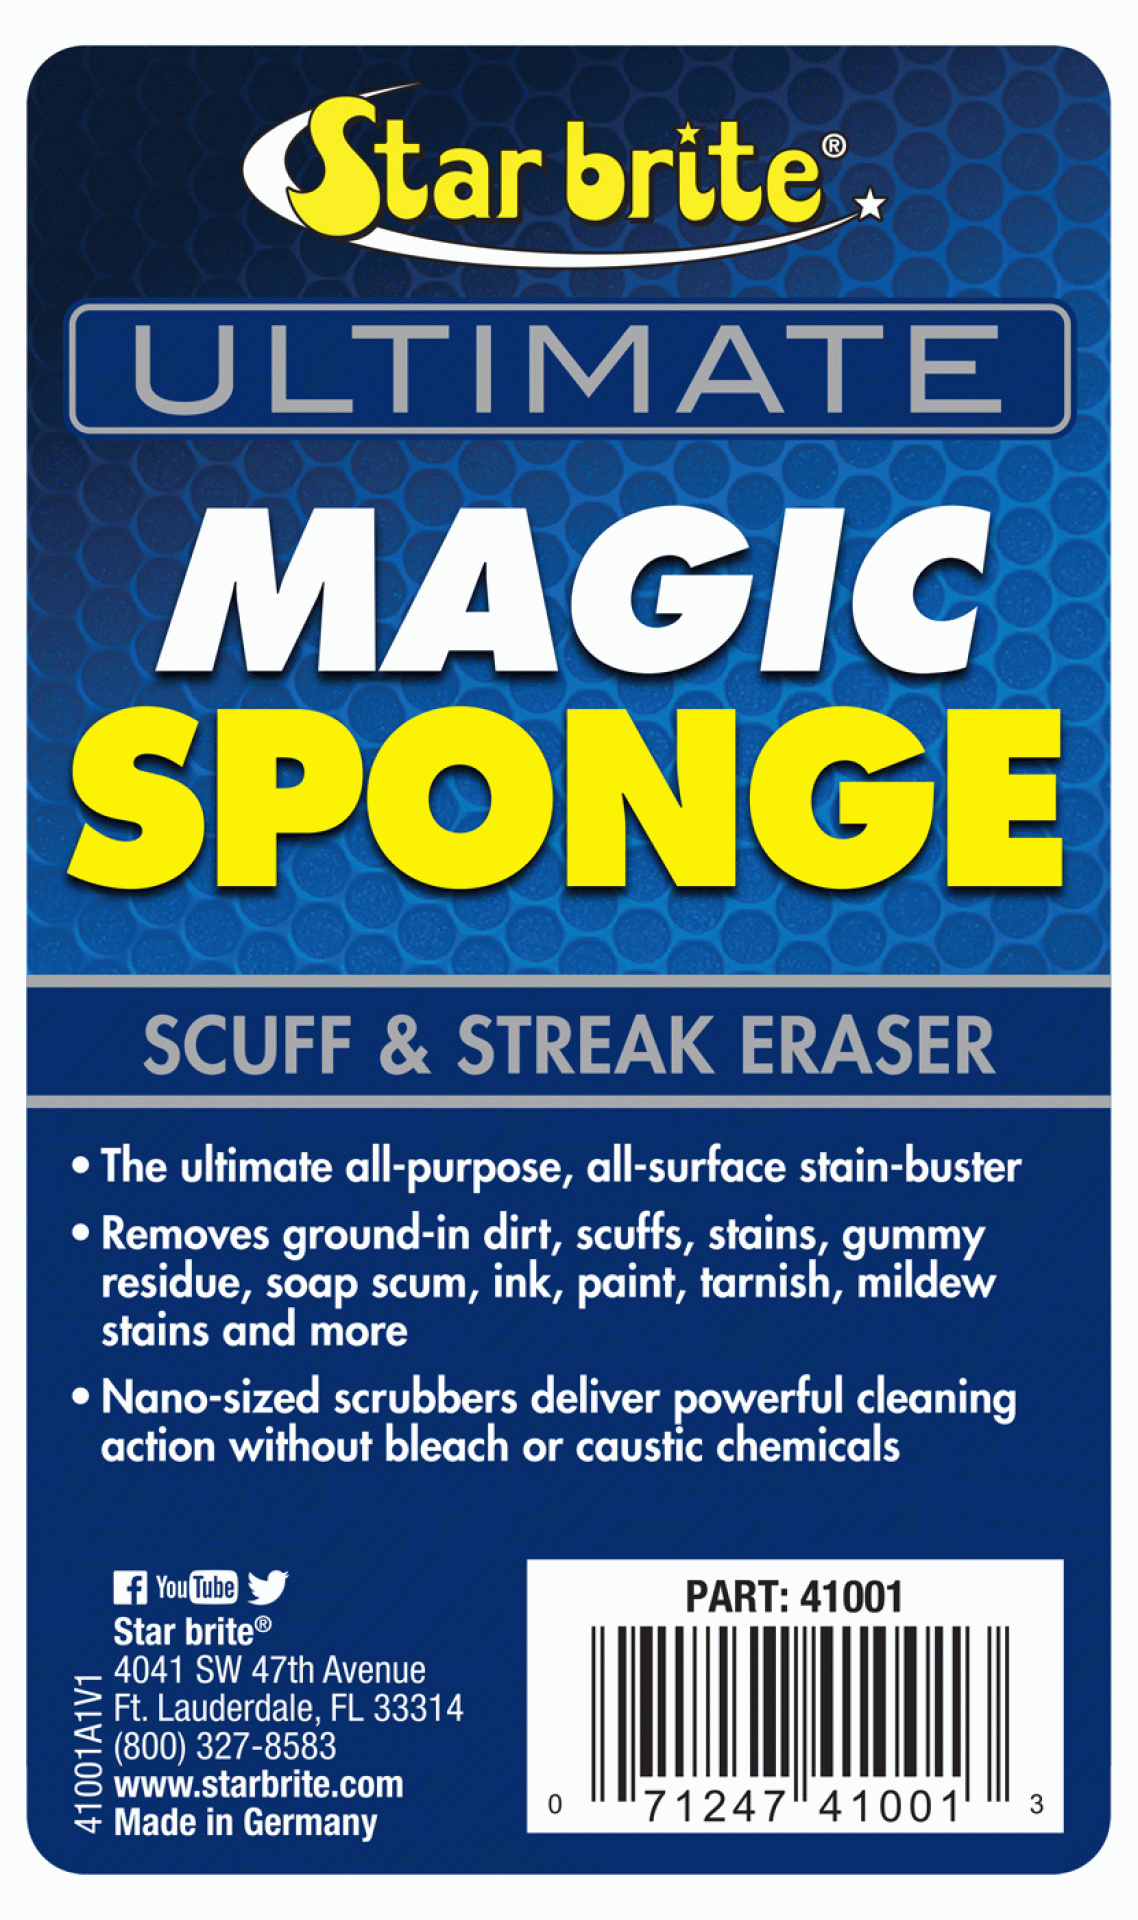 STAR BRITE DISTRIBUTING | 041018 | Ultimate Magic Sponge